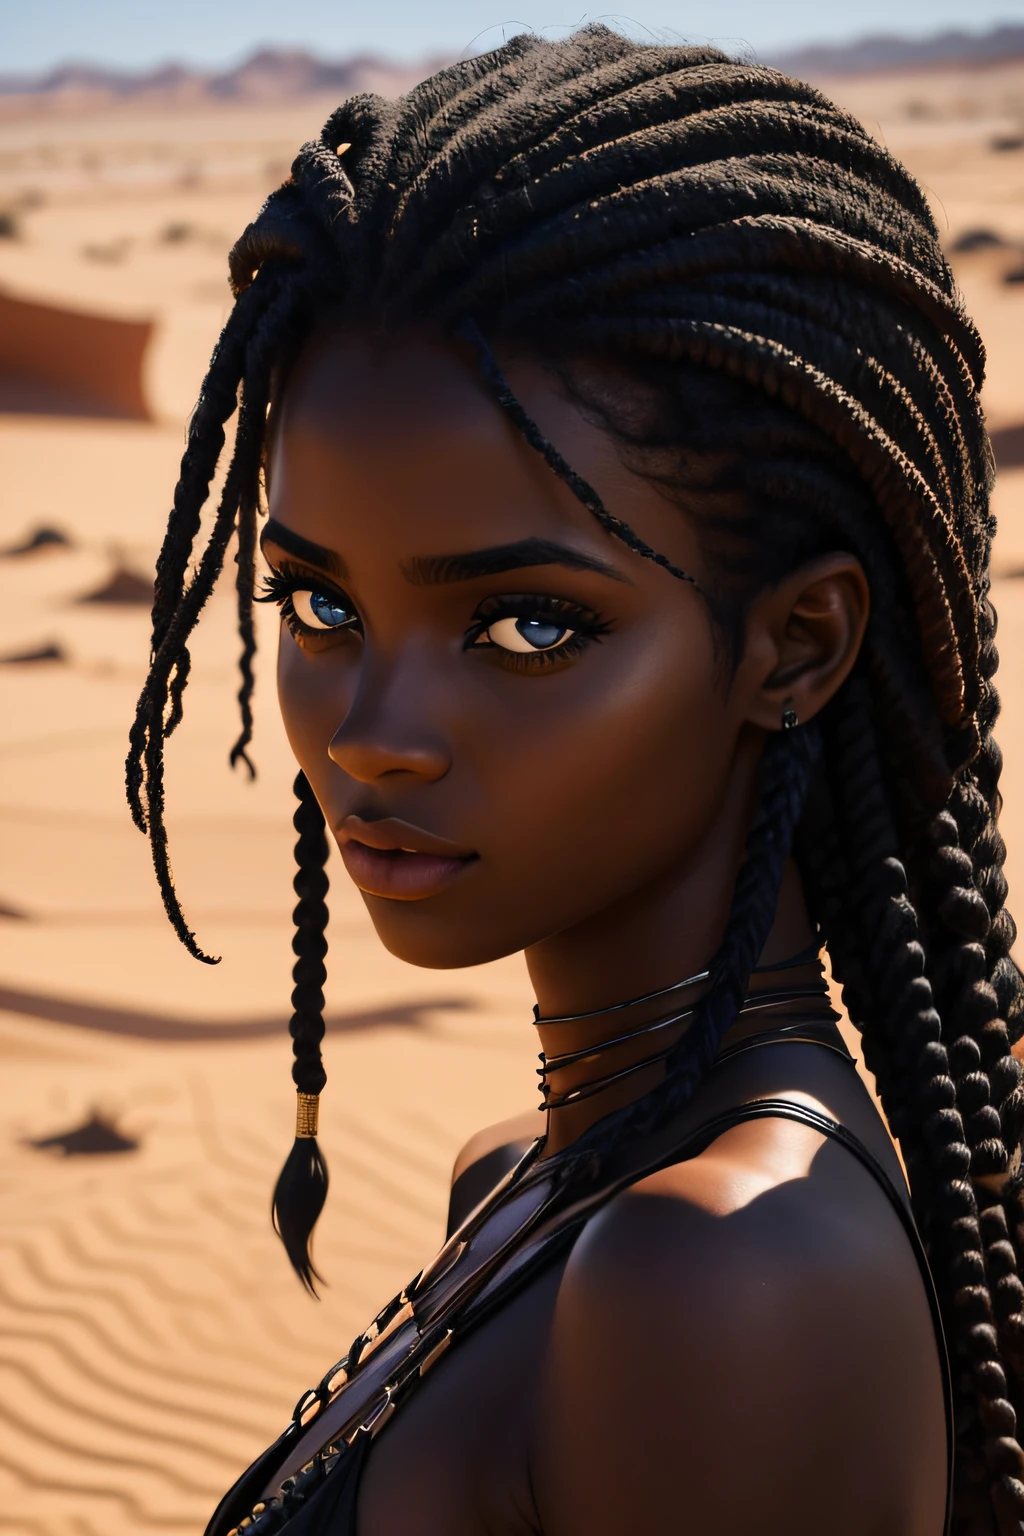 黑人婦女, 棕色的眼睛, 年龄 19 岁, 行走在沙漠中, 濕的, 捲髮, 誘人的樣子